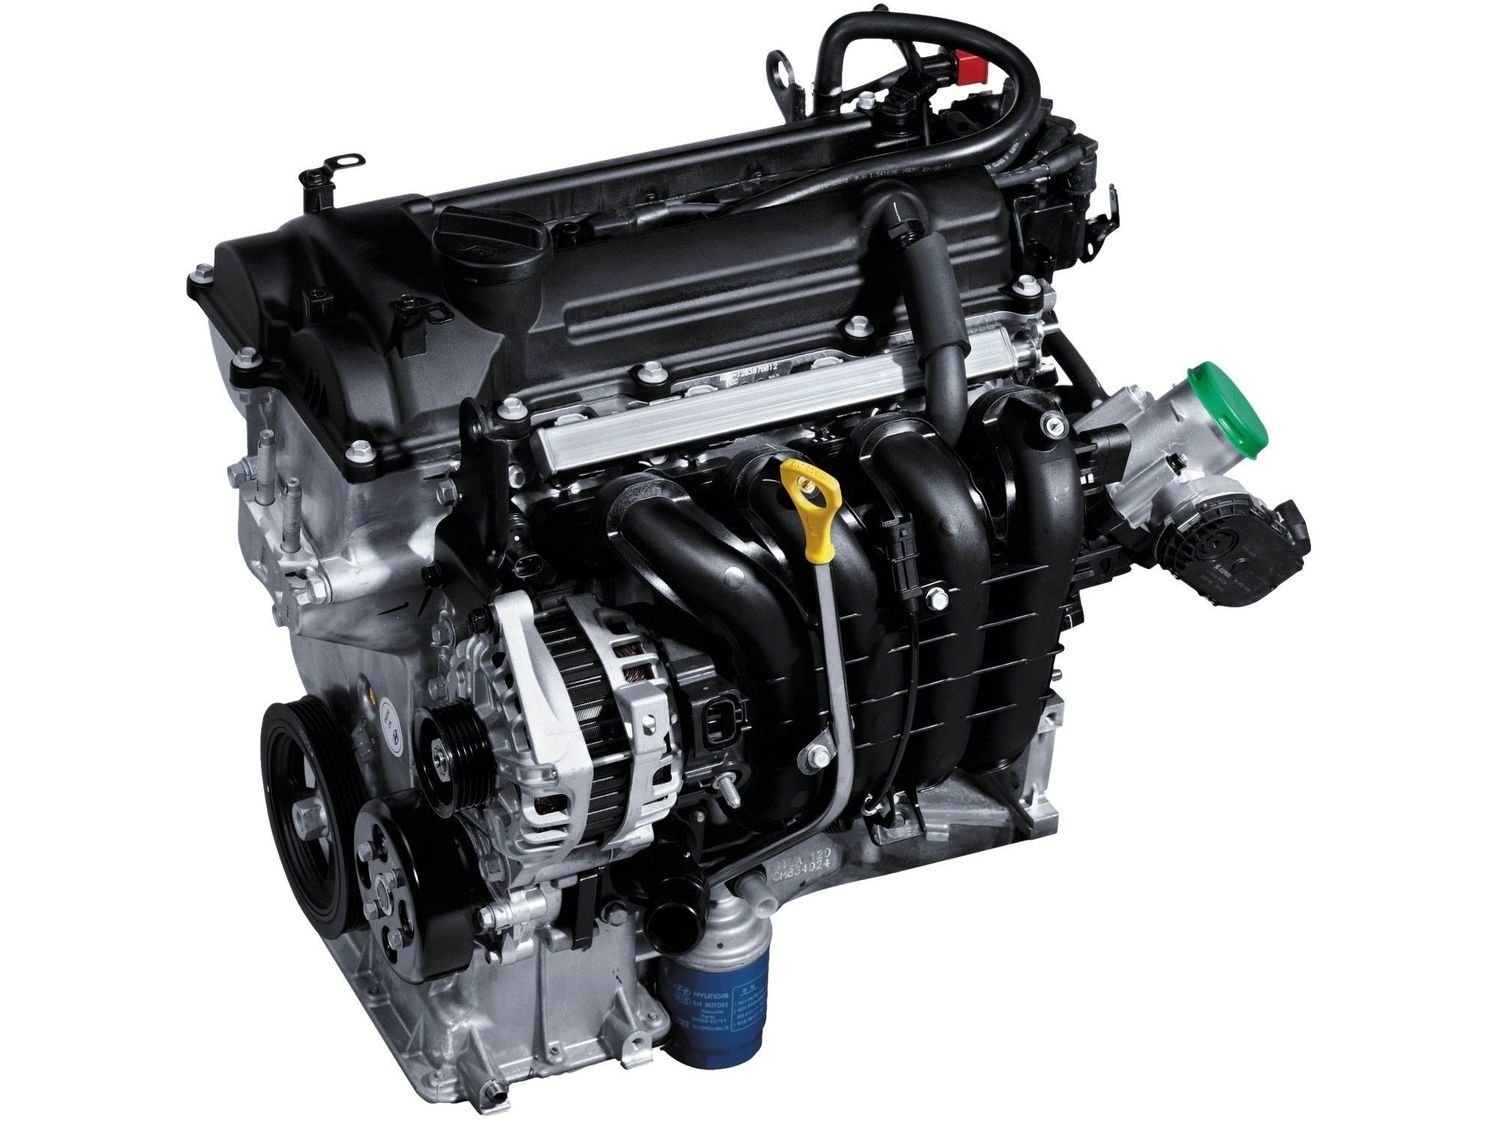 Двигатель на хендай солярис 1.6 цена. Двигатель Hyundai Solaris 1.4. Двигатель Солярис 1.6. Двигатель Hyundai Kappa 1.4. Габариты двигателя Солярис 1.4.